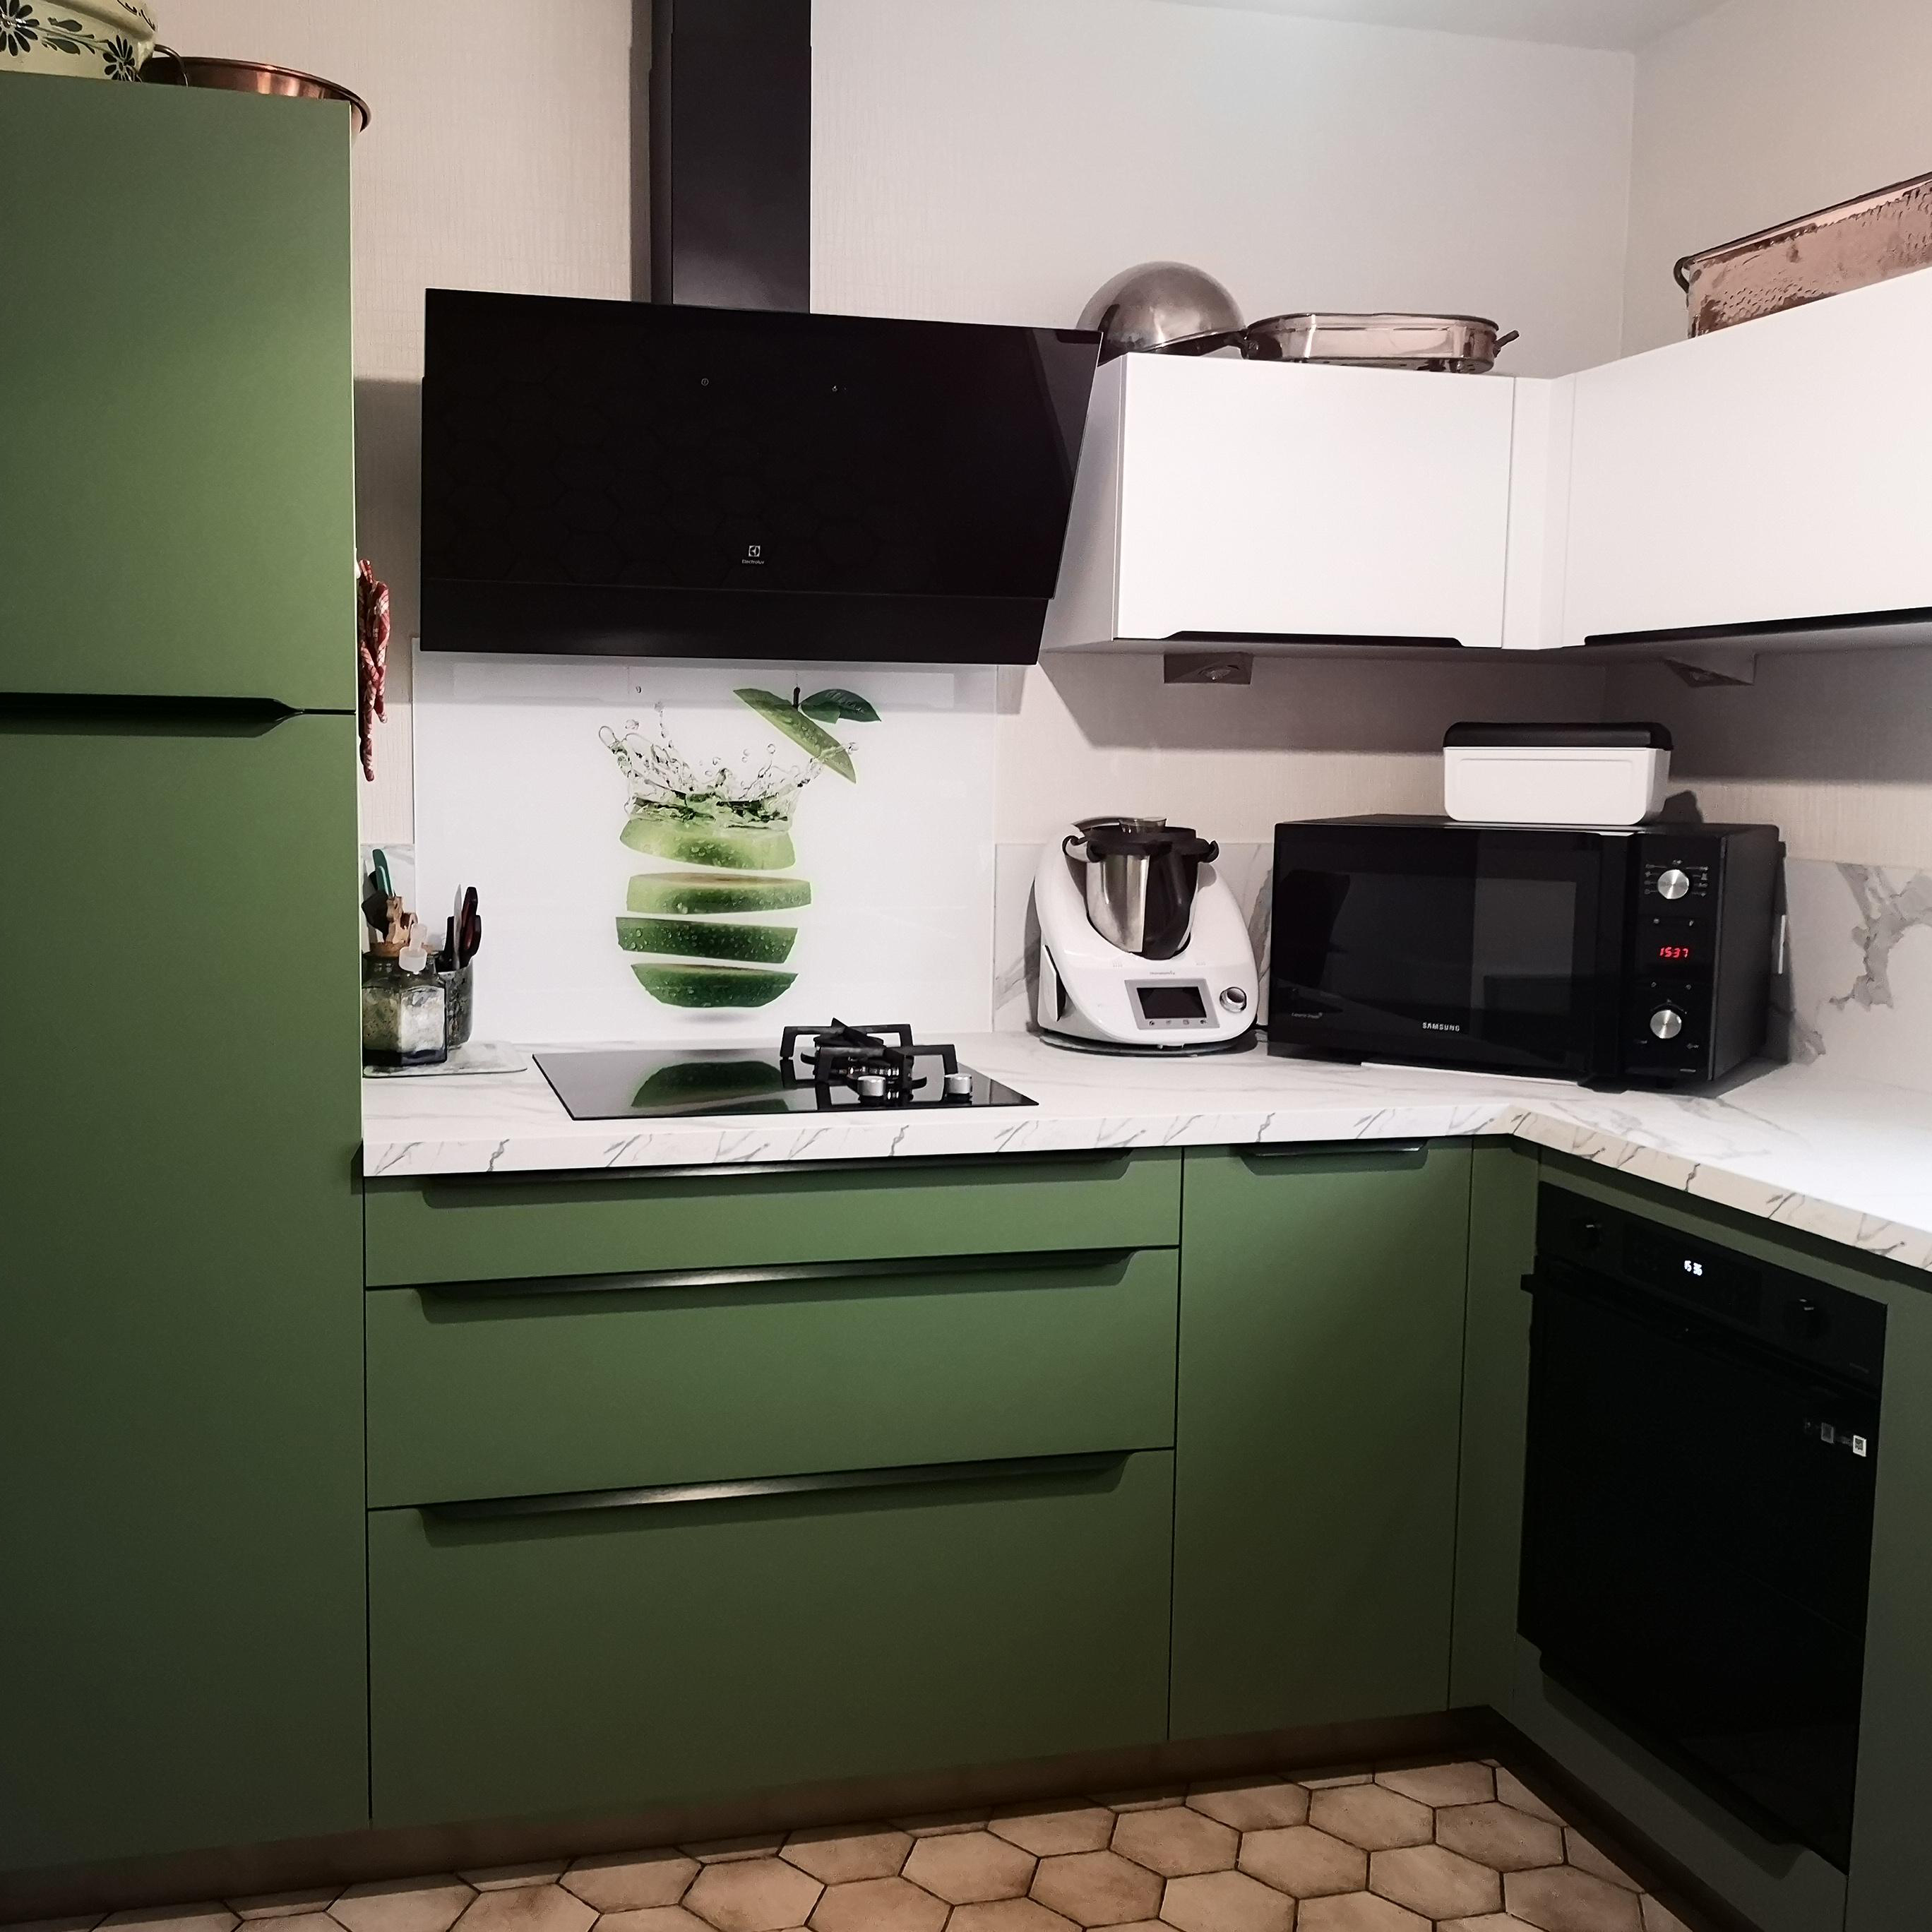 Cuisine modèle Caféine vector coloris vert amazonie. Plan de travail marbre blanc et poignée noire intégrée.